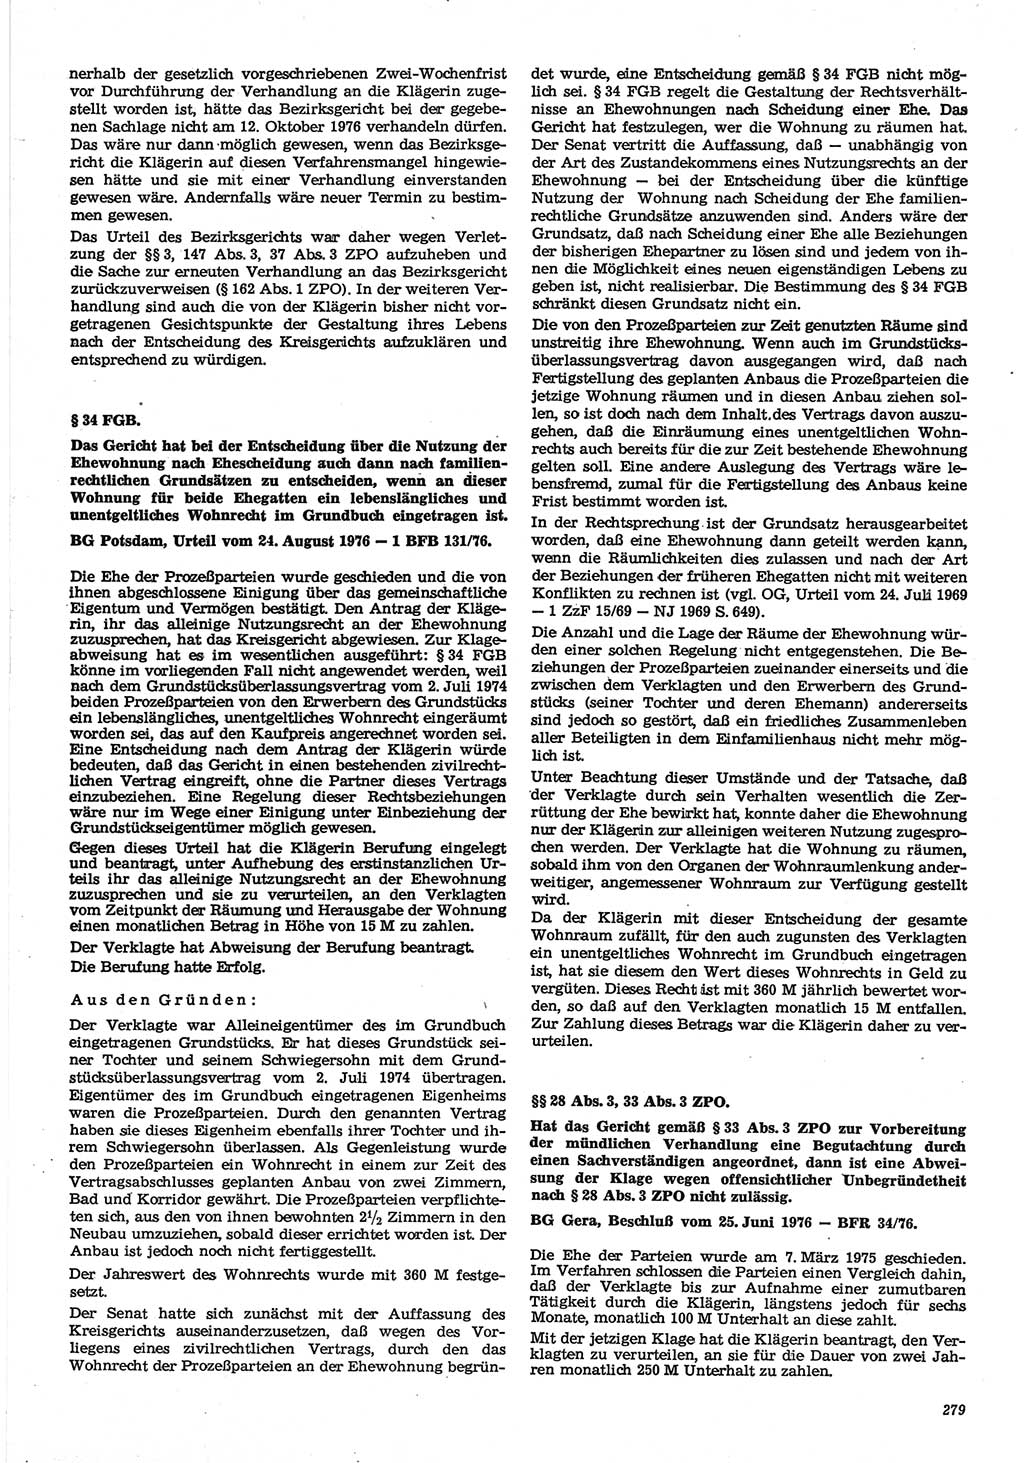 Neue Justiz (NJ), Zeitschrift für Recht und Rechtswissenschaft-Zeitschrift, sozialistisches Recht und Gesetzlichkeit, 31. Jahrgang 1977, Seite 279 (NJ DDR 1977, S. 279)